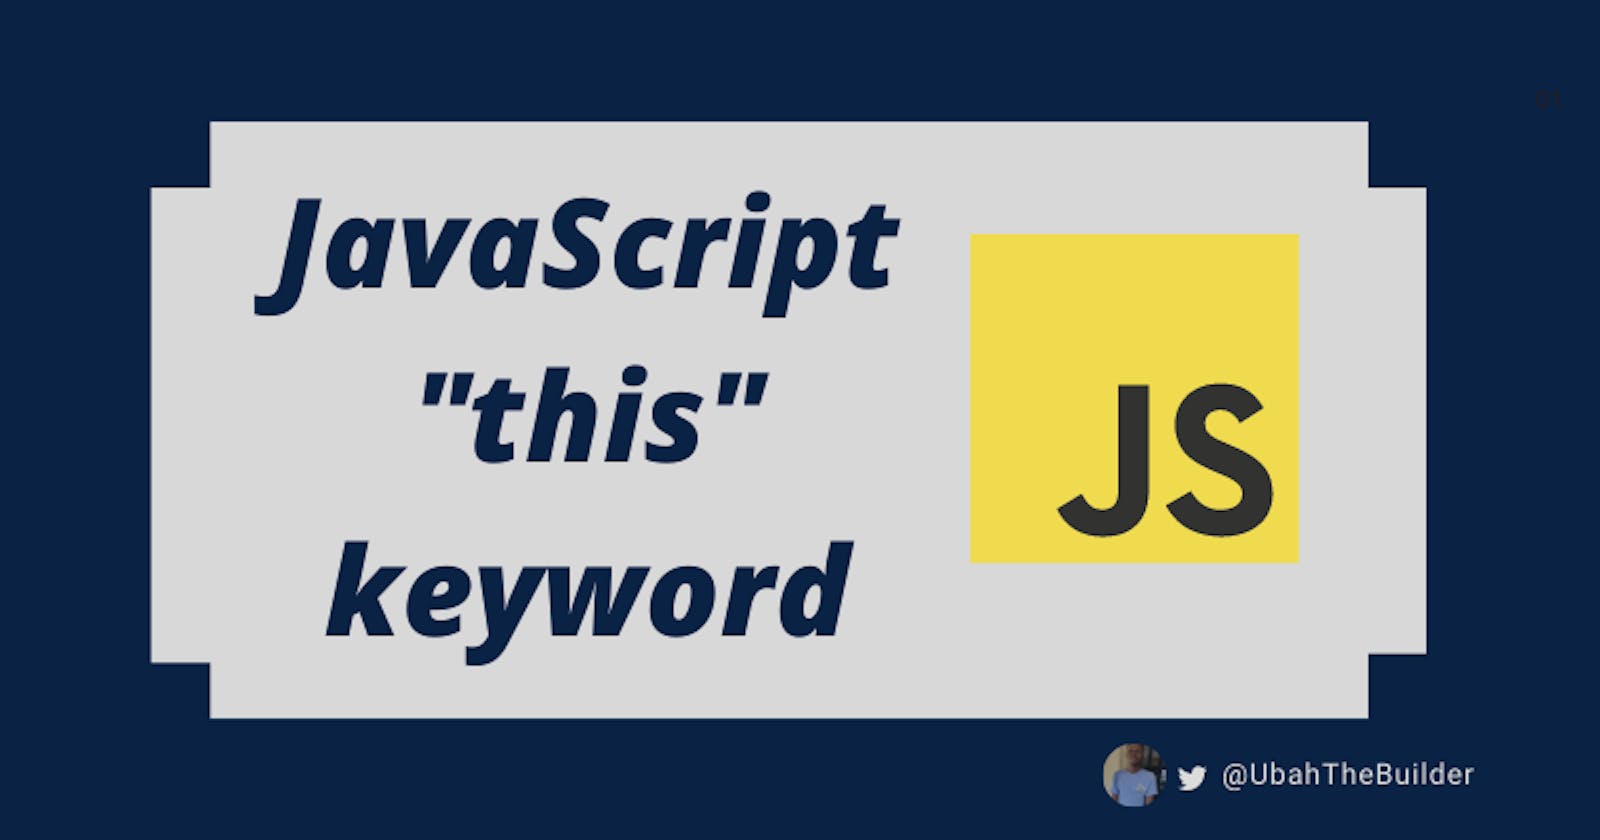 JavaScript "this" Keyword